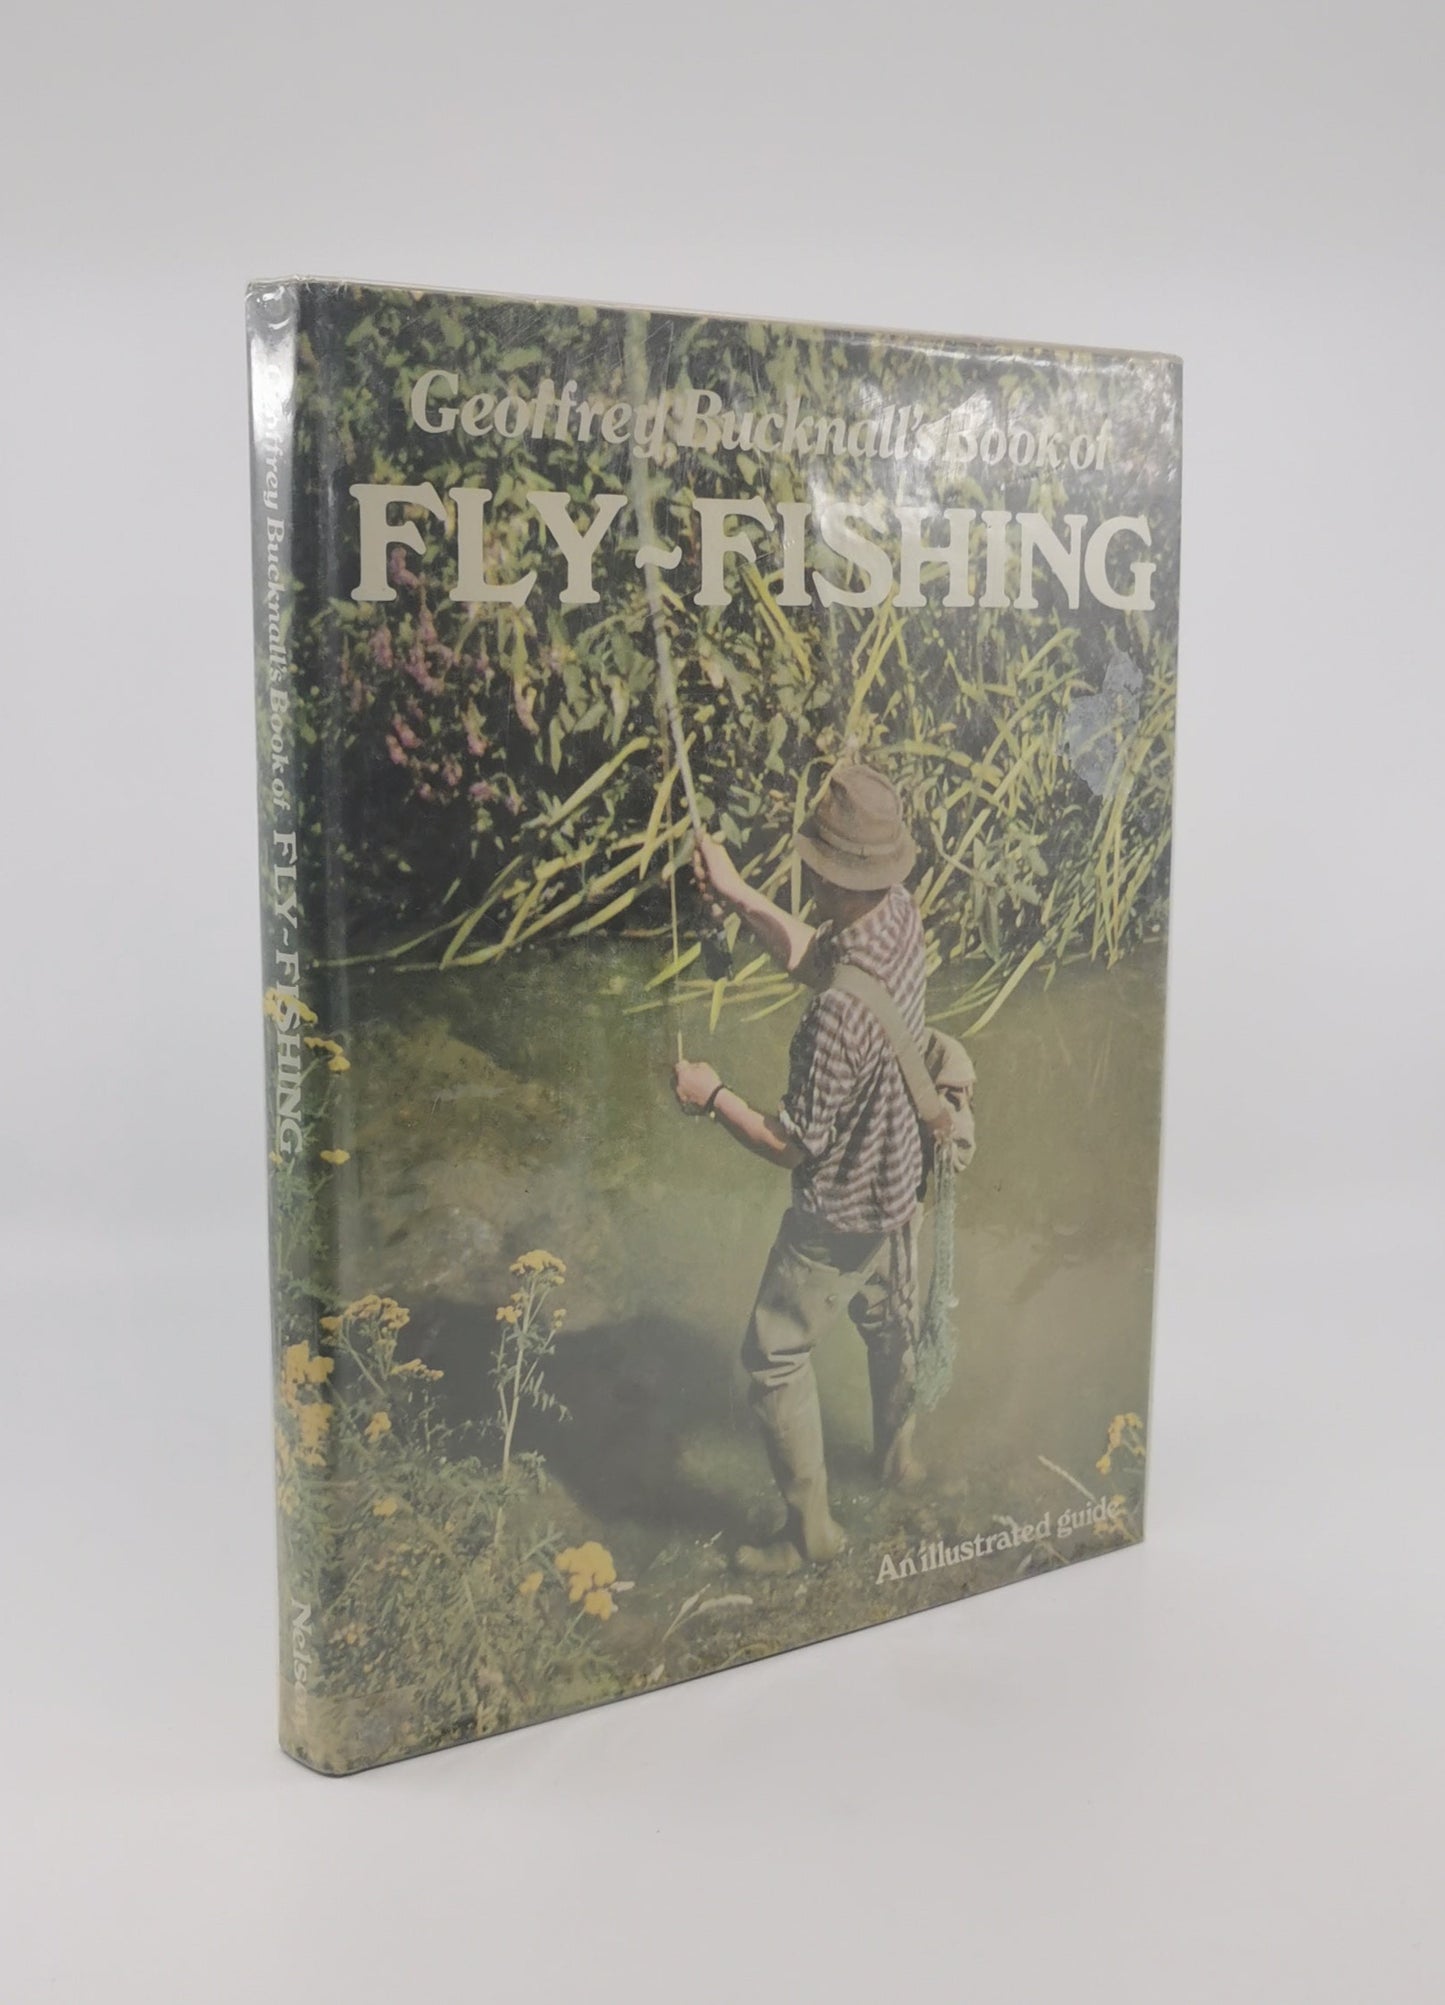 Geoffrey Bucknall's Book Of Fly-Fishing